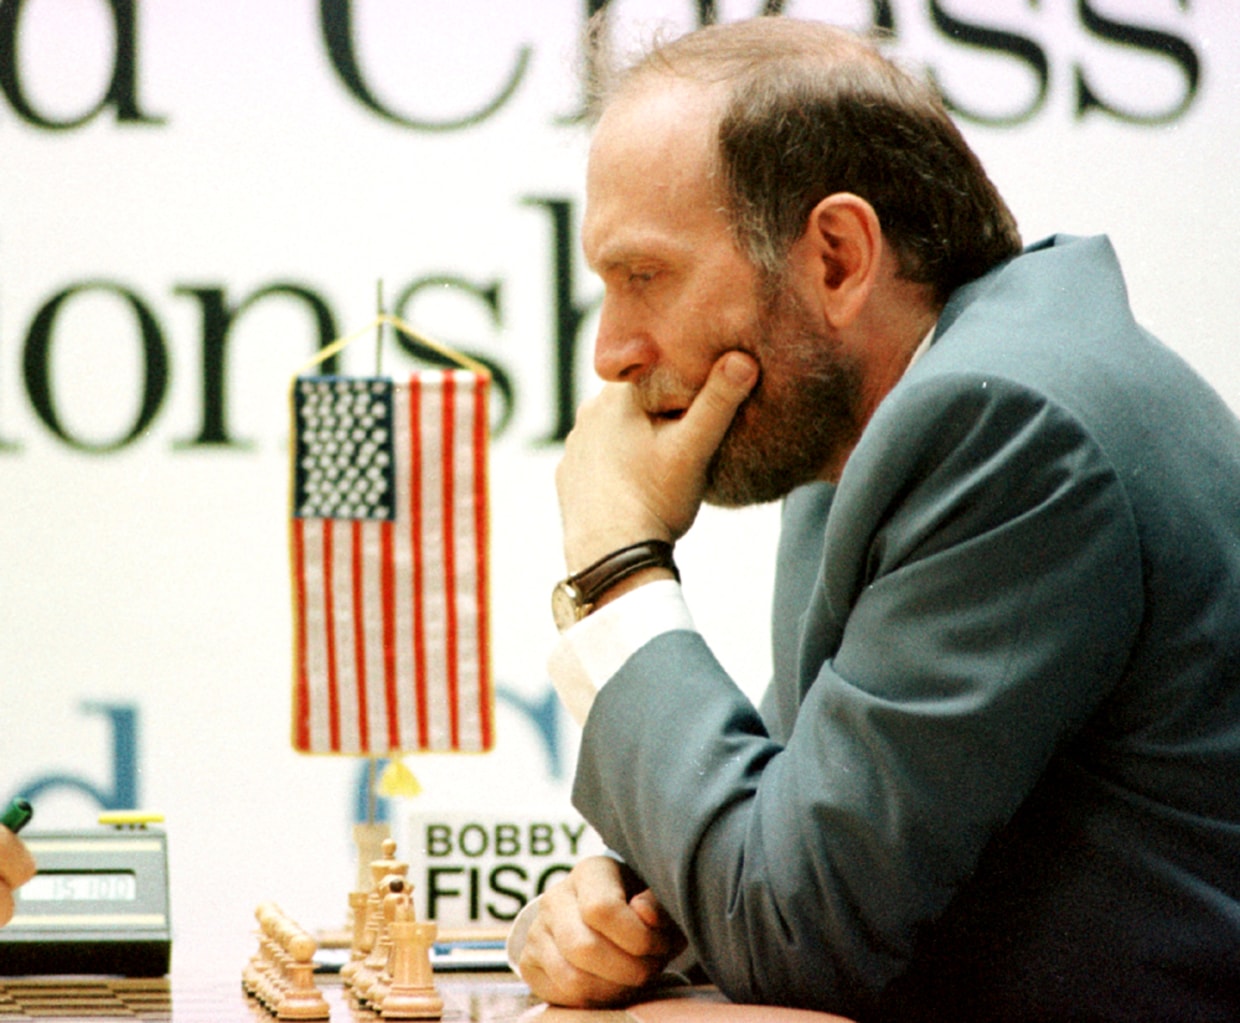 Fischer–Spassky (1992 Match) 